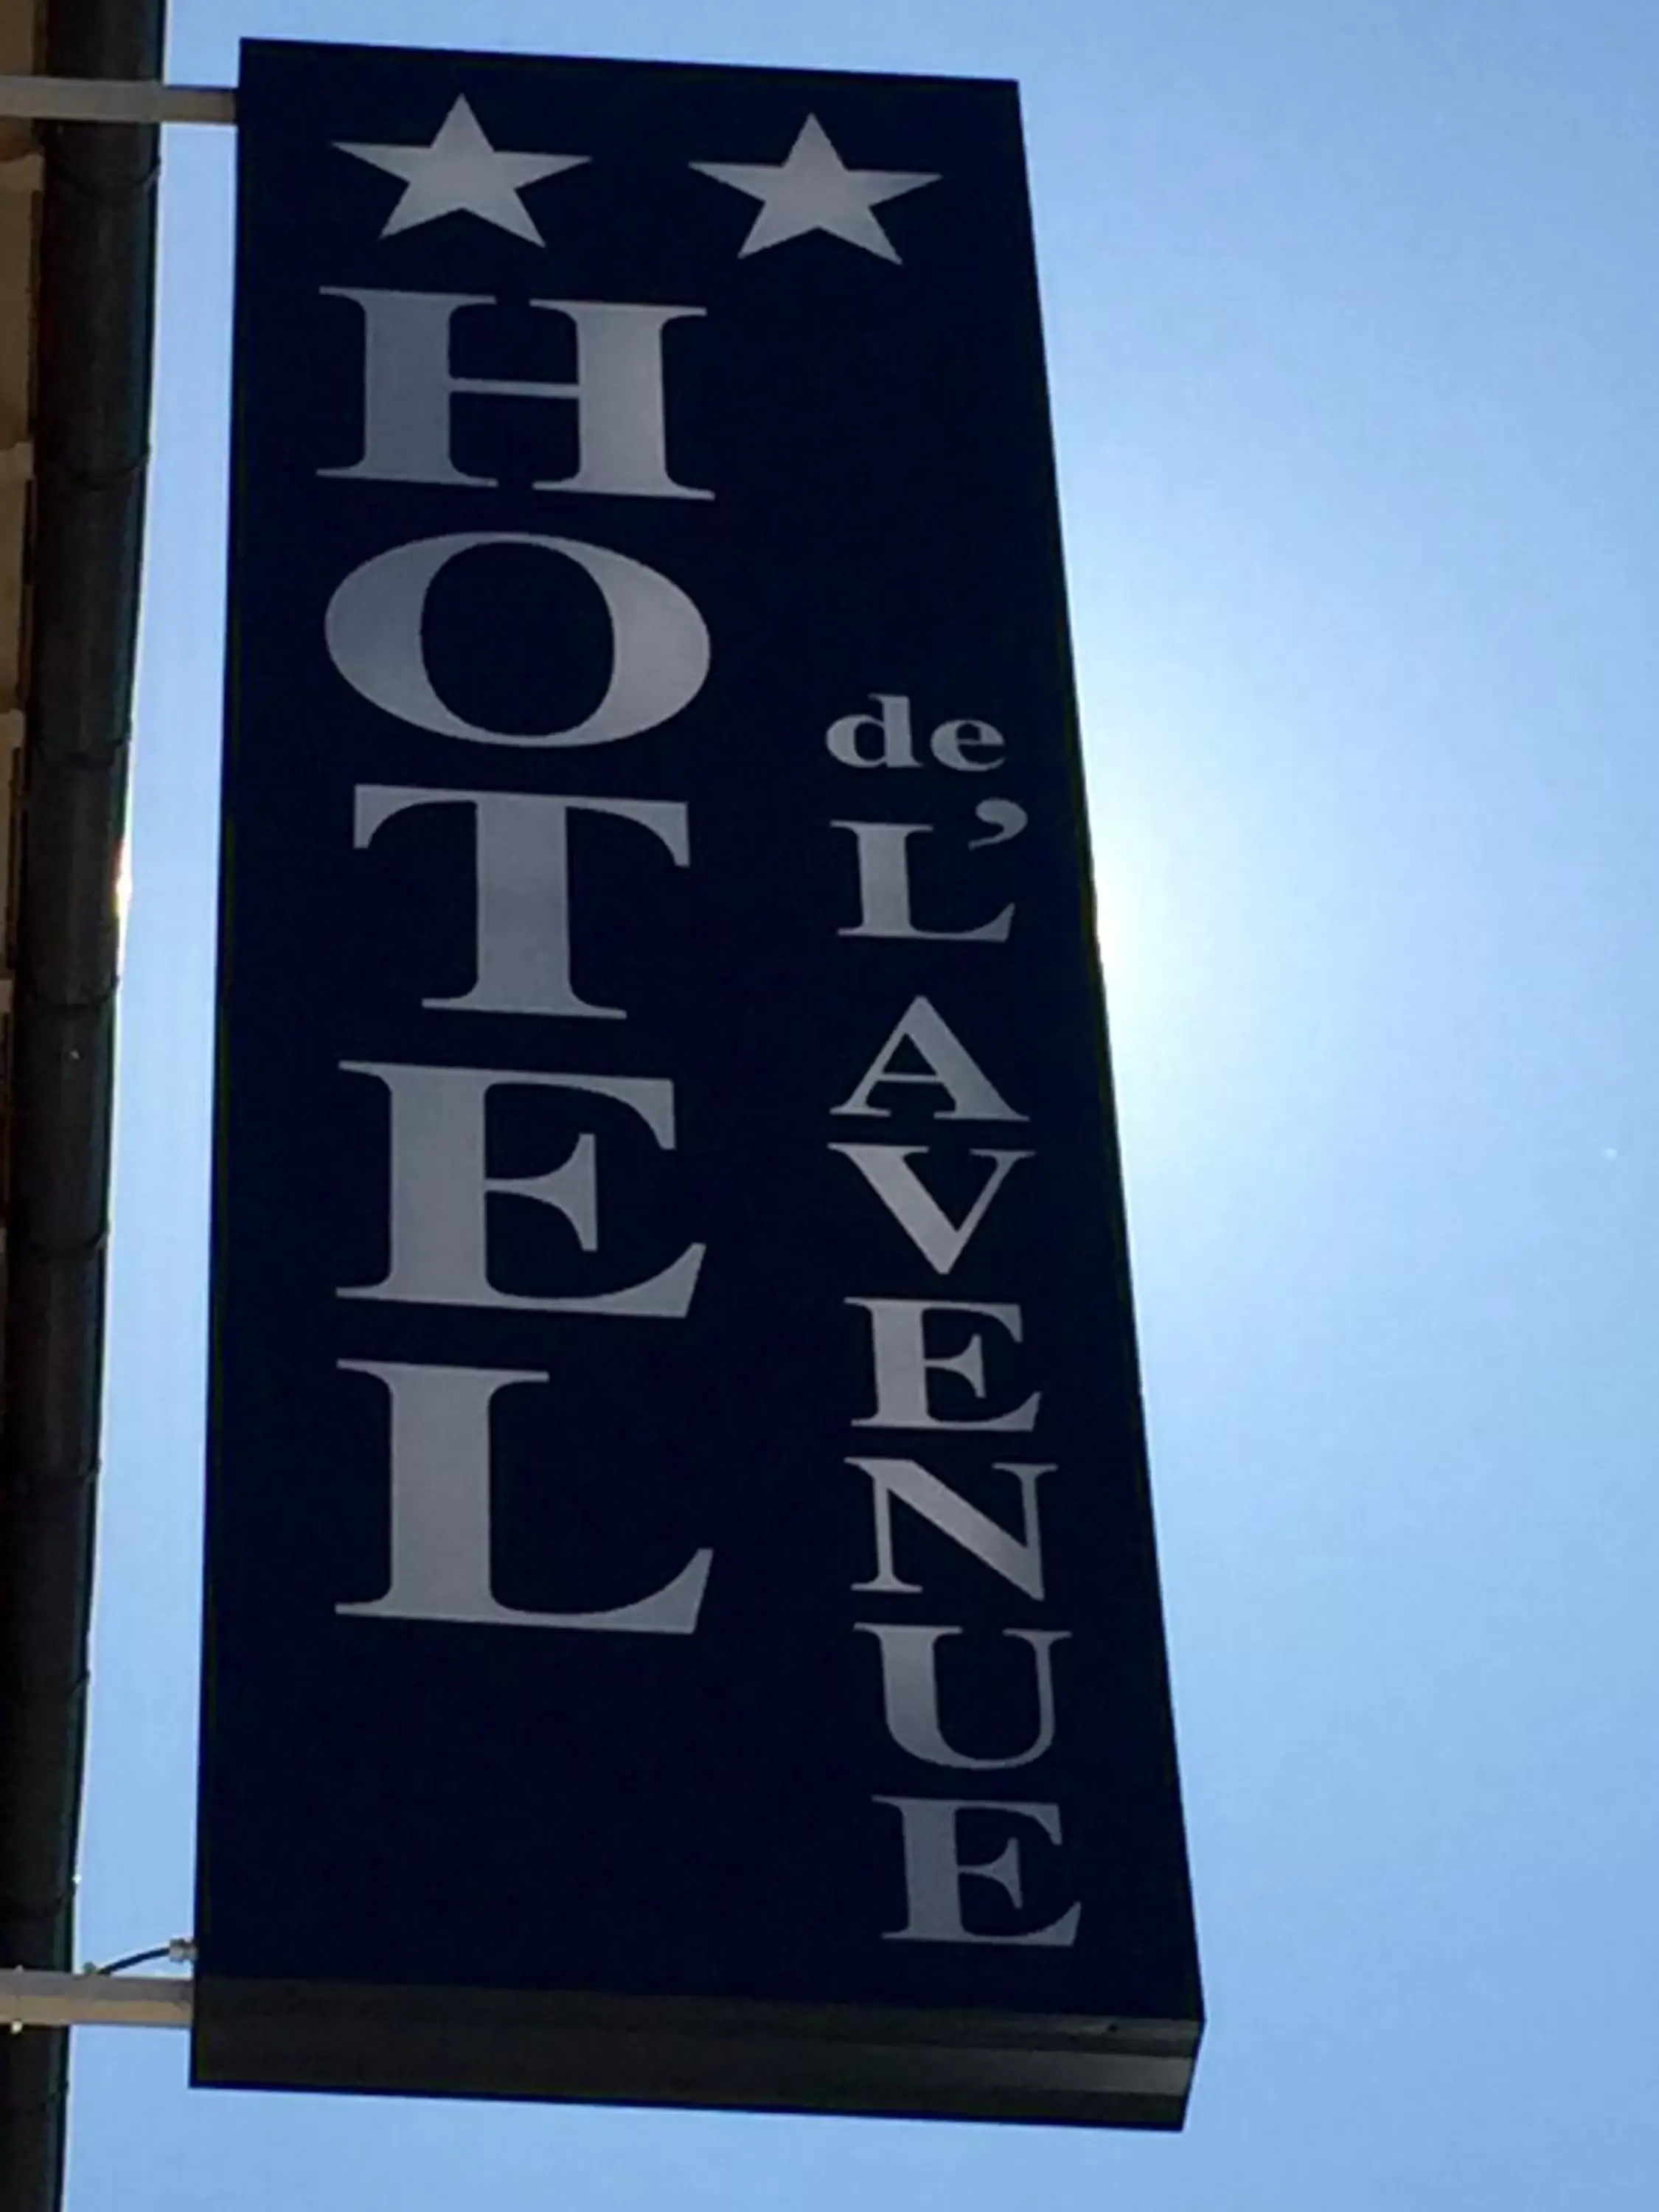 Property logo or sign in Hôtel de L'Avenue